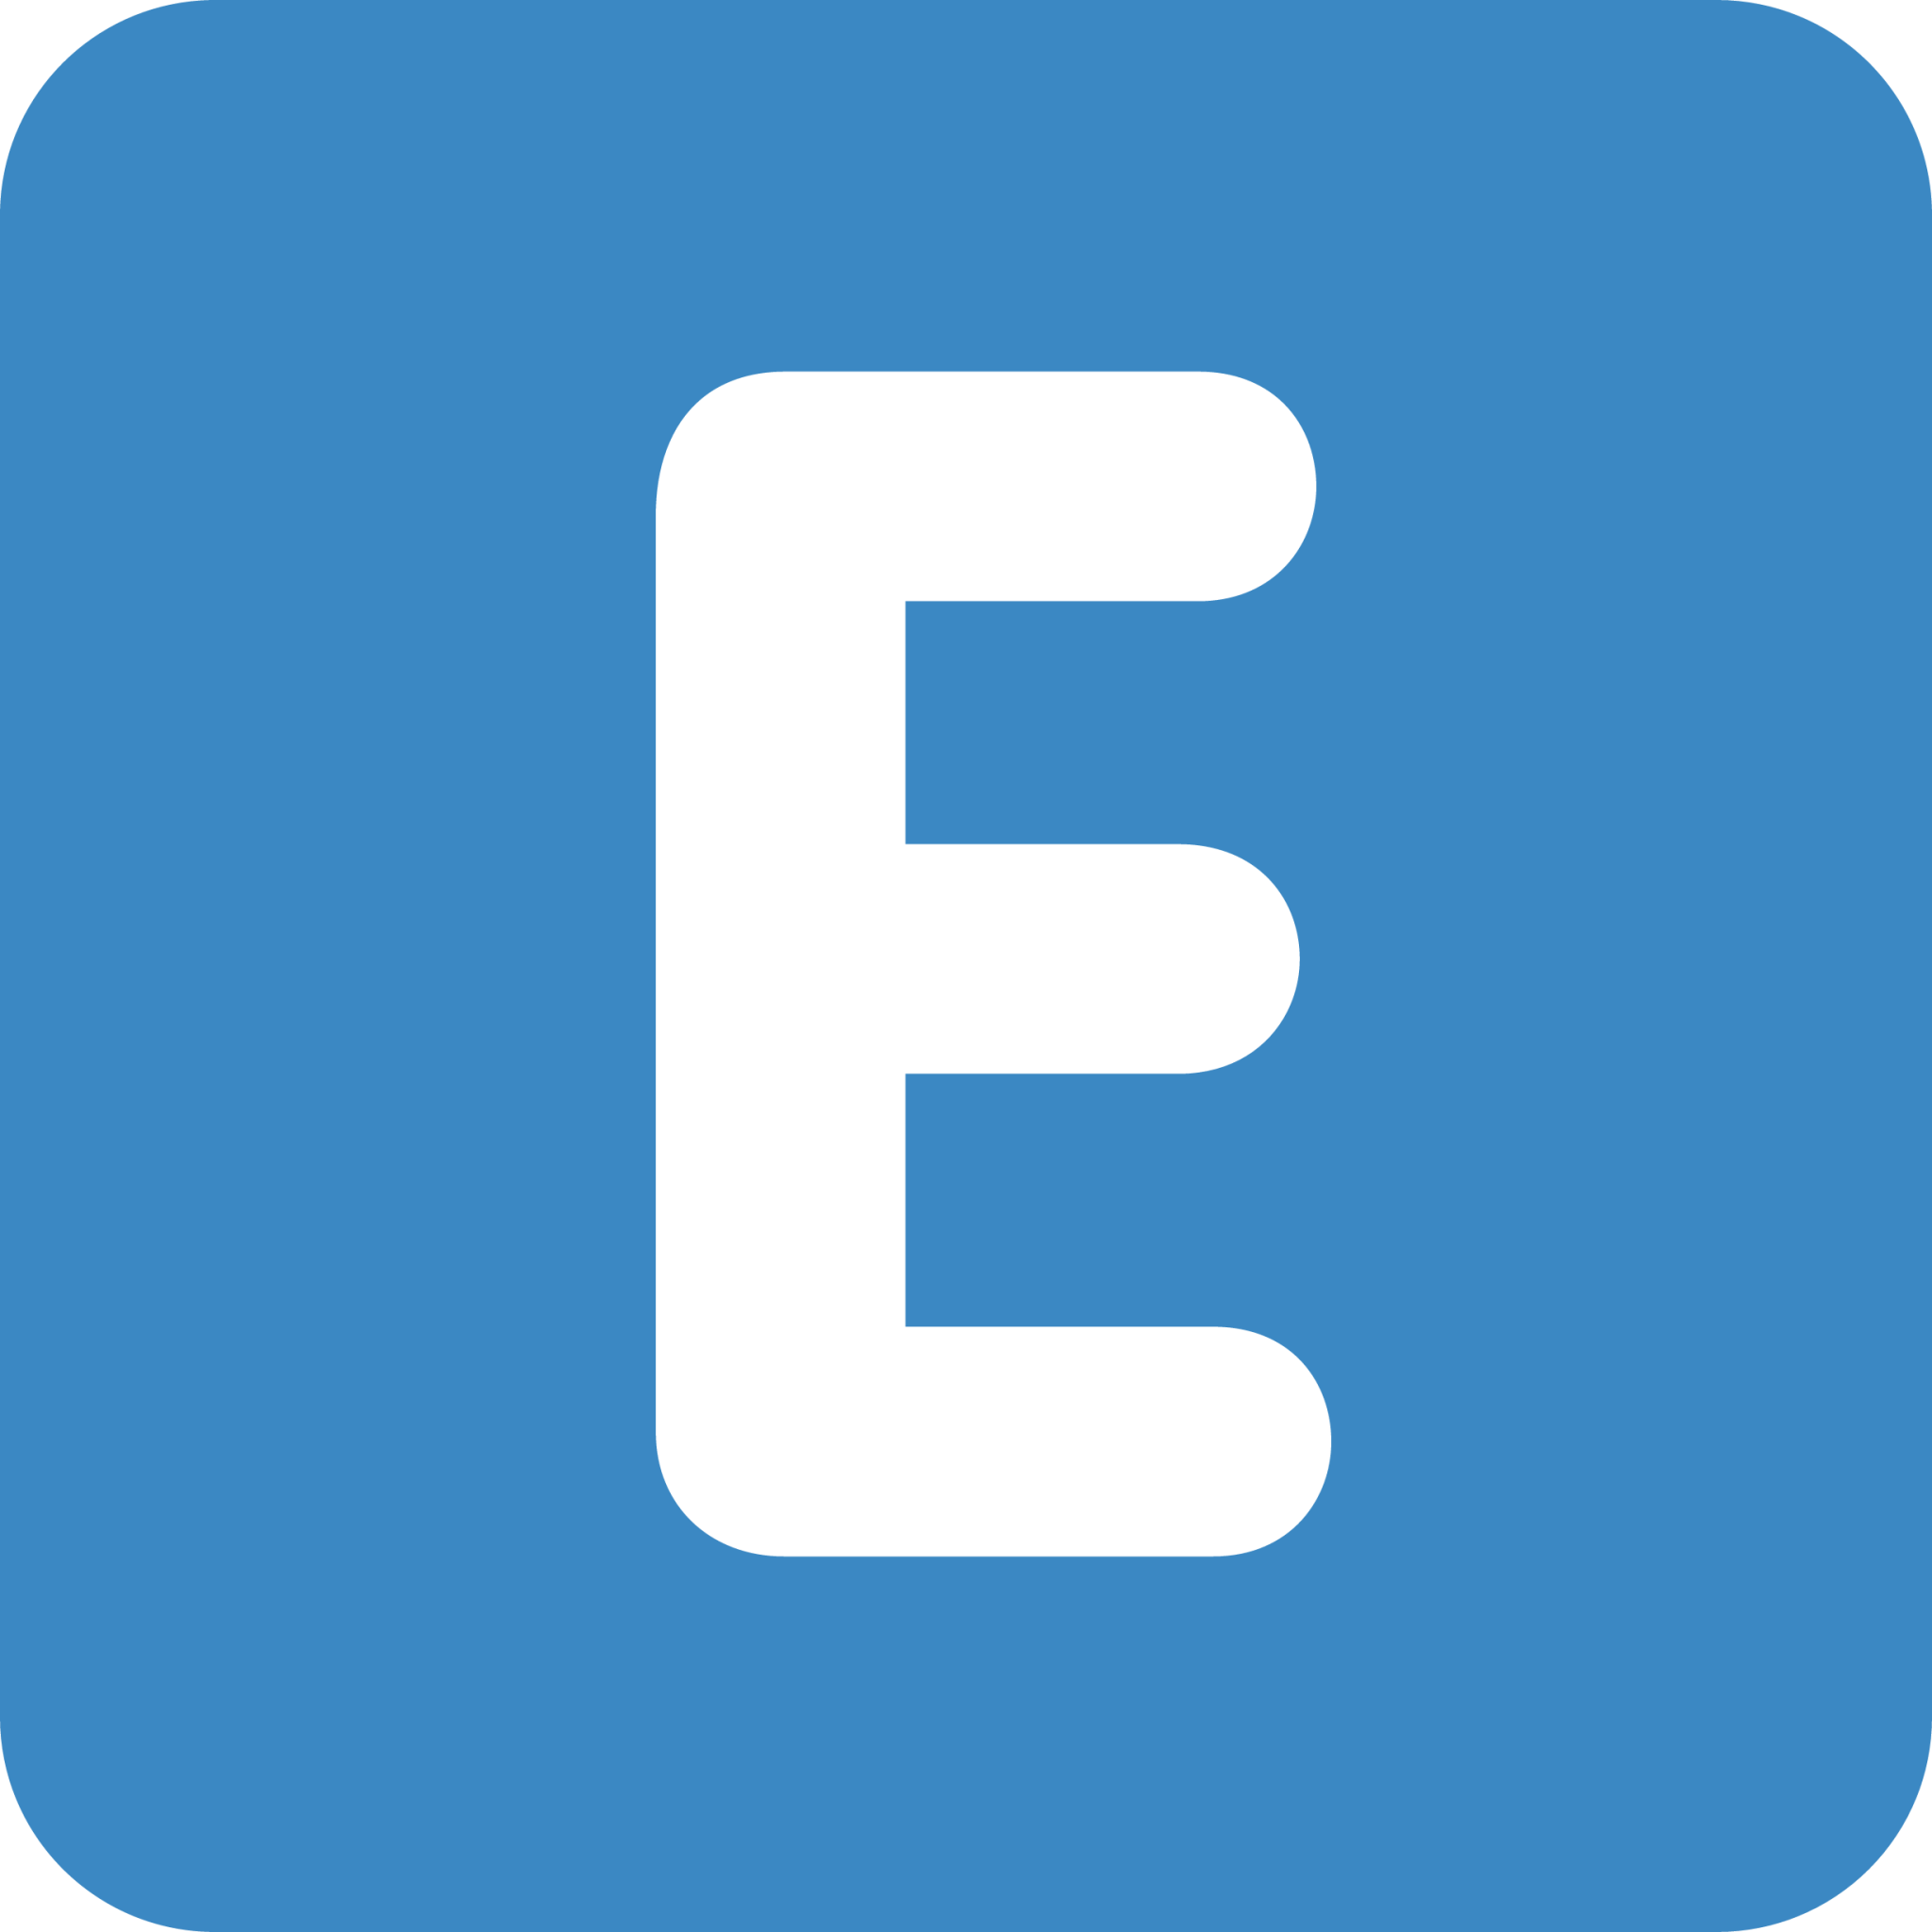 e symbol in a circle